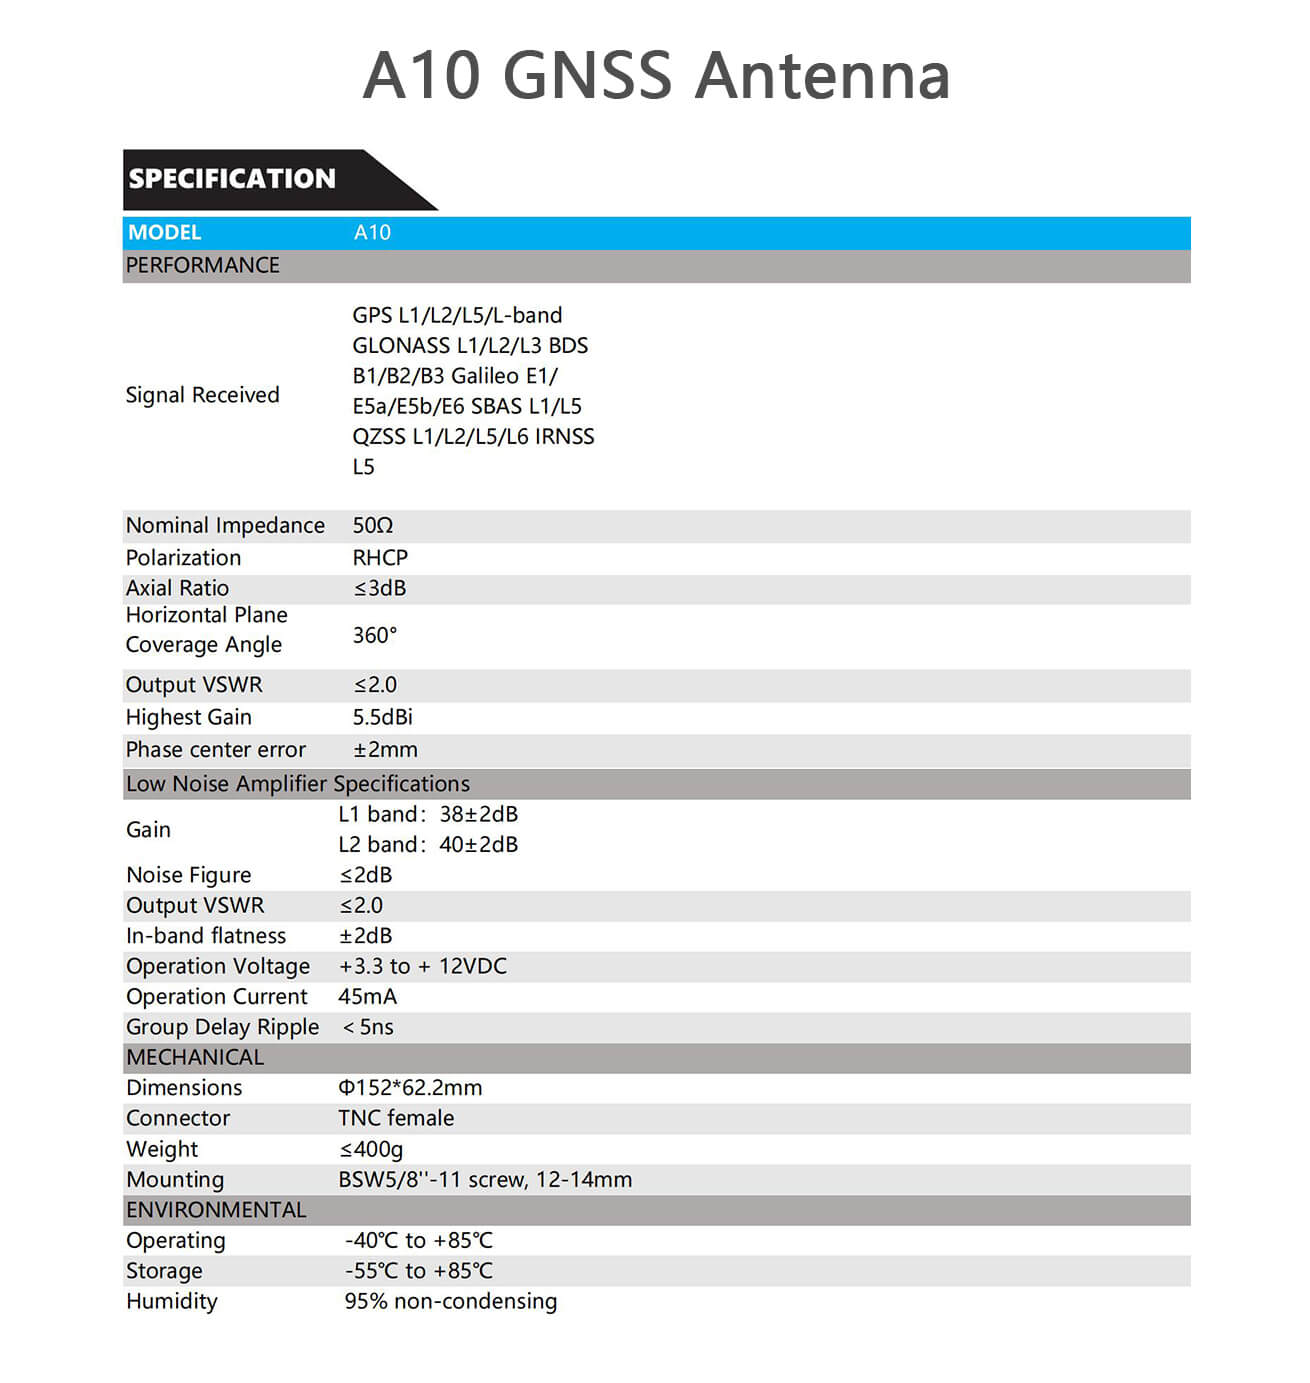 GNSS Antenna